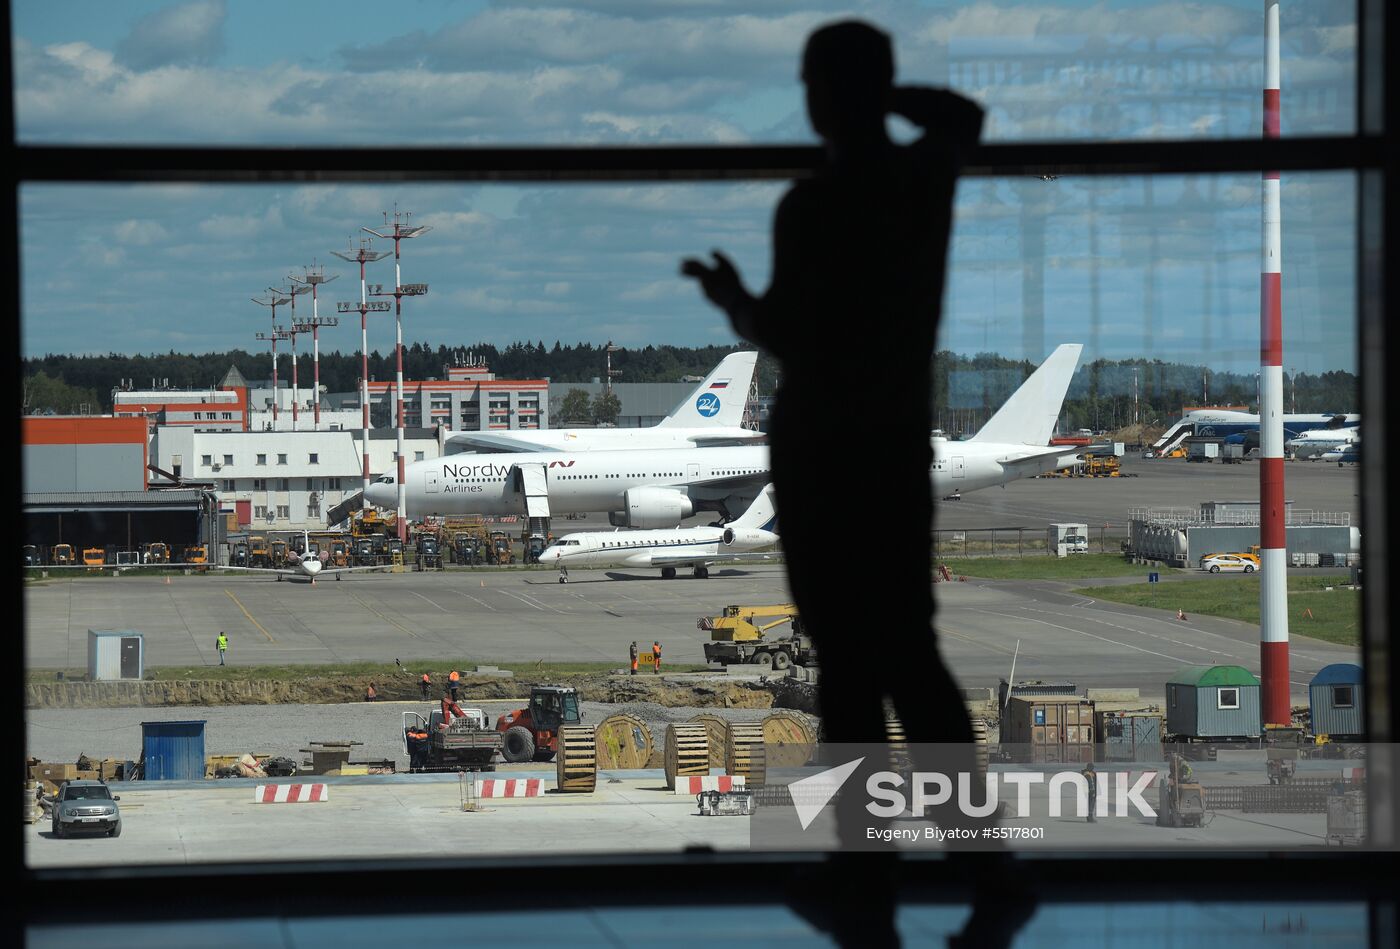 New Passenger Terminal B at Sheremetyevo International Airport